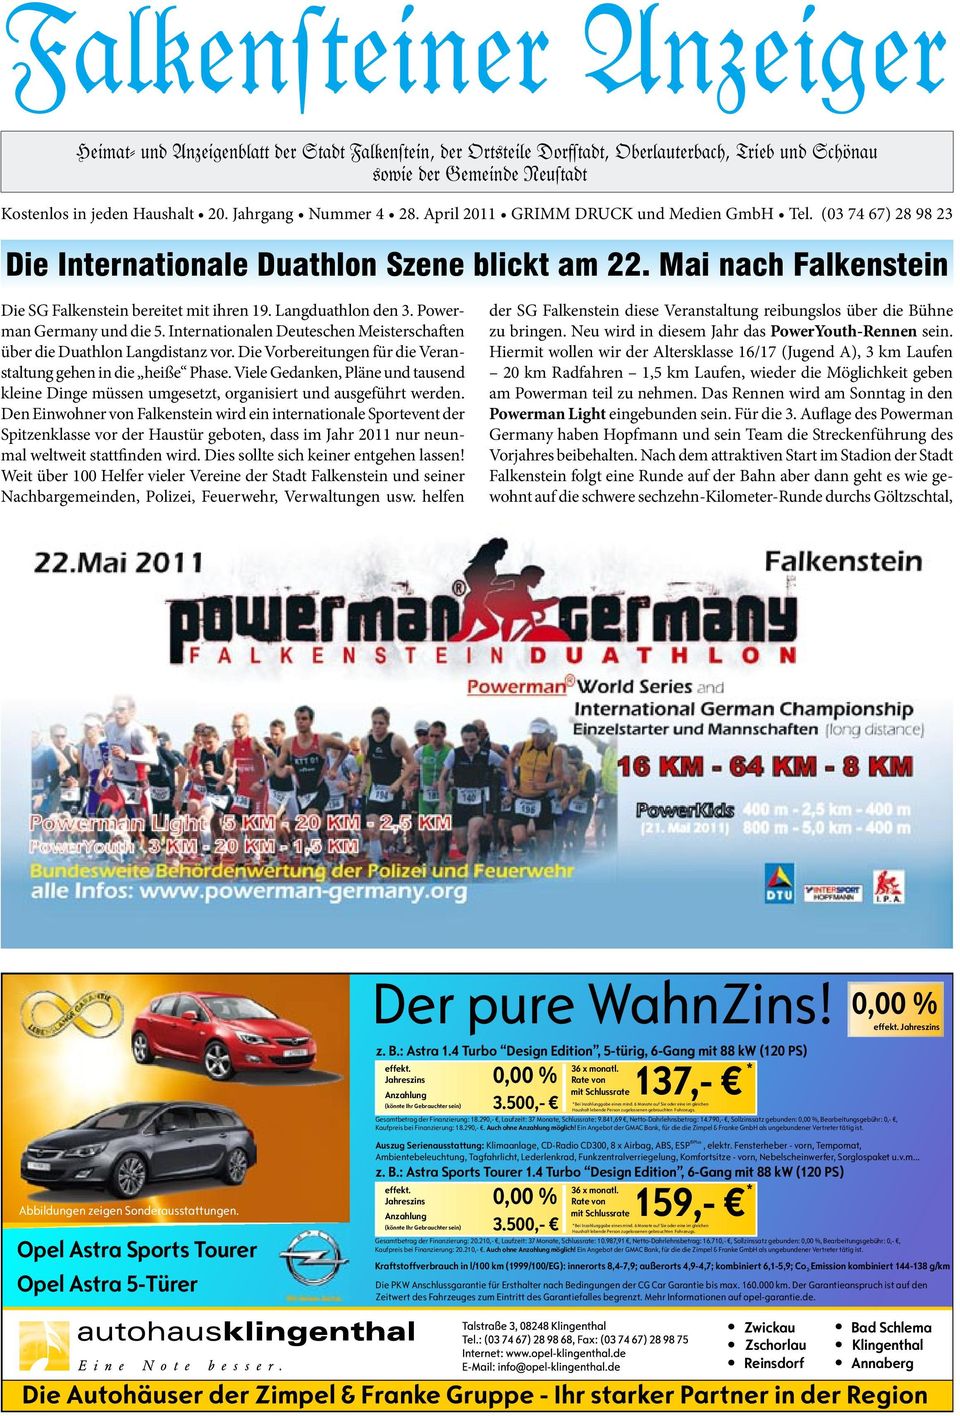 Powerman Germany und die 5. Internationalen Deuteschen Meisterschaften über die Duathlon Langdistanz vor. Die Vorbereitungen für die Veranstaltung gehen in die heiße Phase.